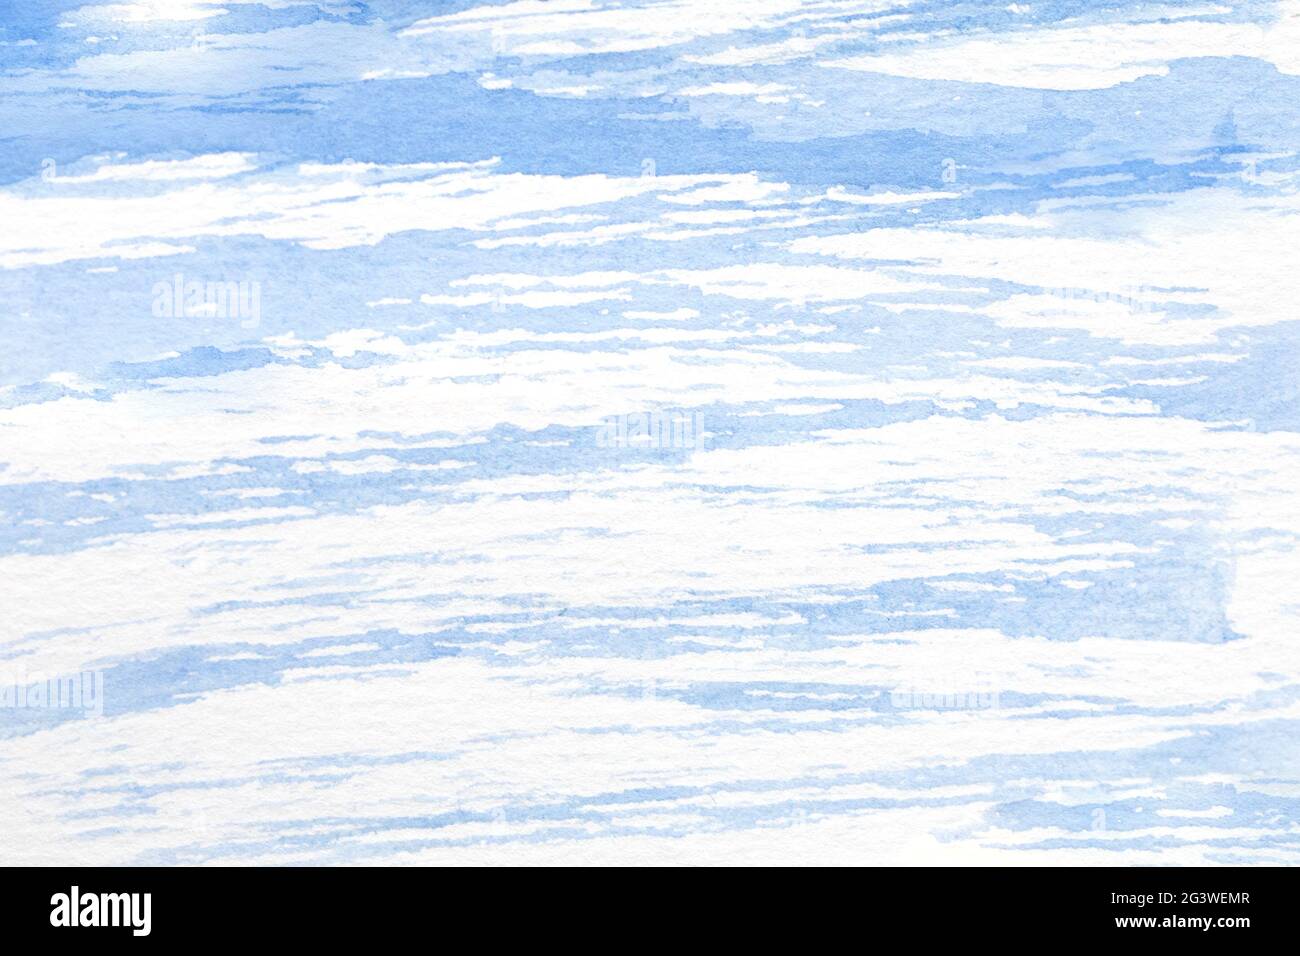 Délicate aquarelle illustration de bleu avec le ciel de cirrocumulus undulatus. Dessin détaillé d'un ciel nuageux ou d'un matériau de finition décoratif en bleu clair Banque D'Images